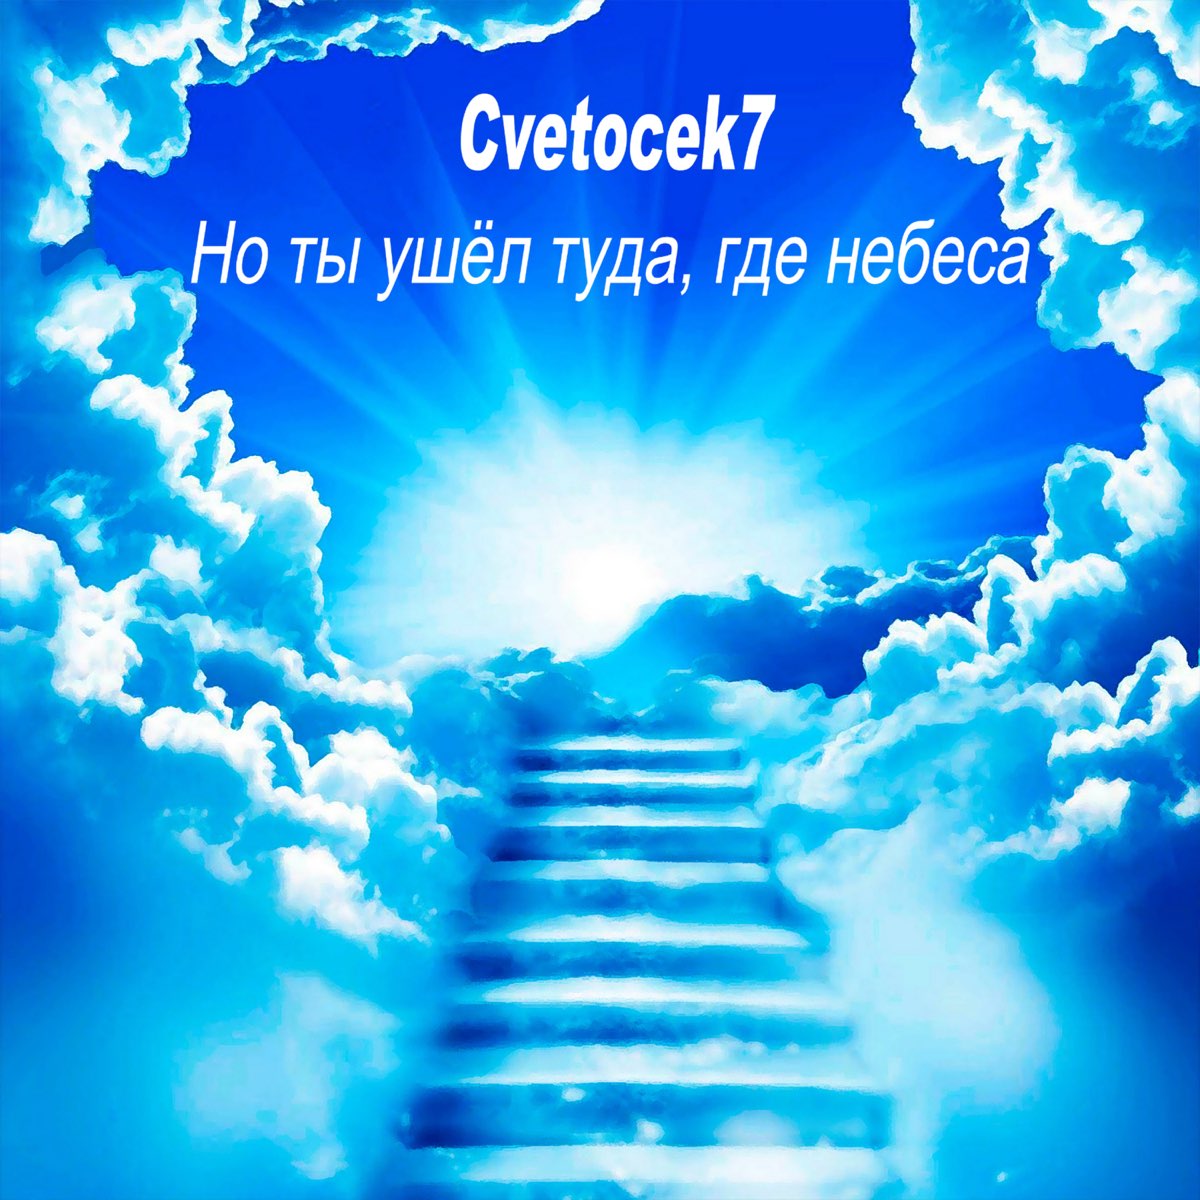 Но ты ушёл туда, где небеса - Single by Cvetocek7 on Apple Music.